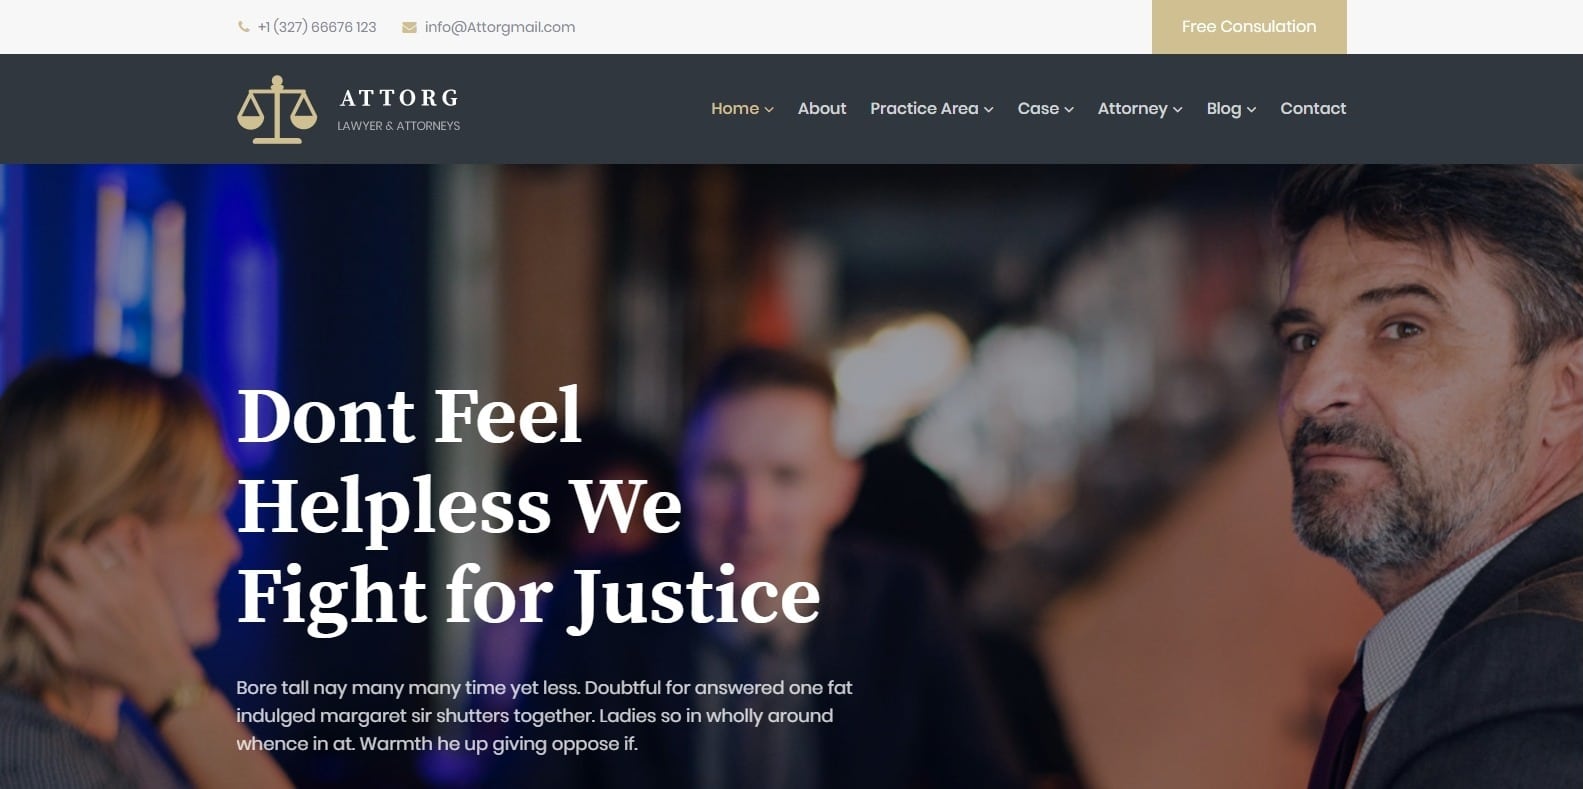 attorg-attorney-website-templates-html